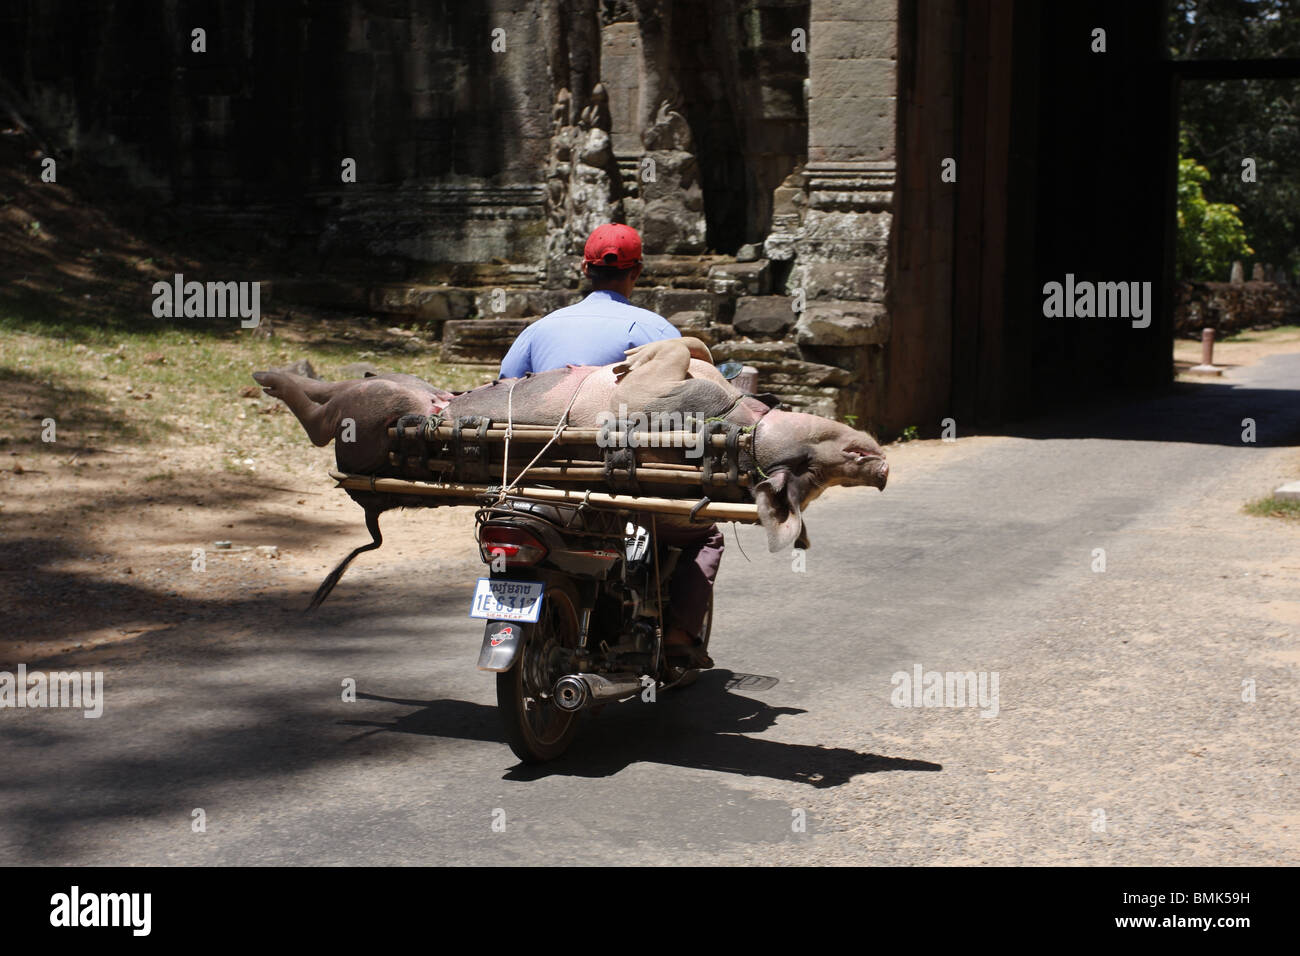 Un motocycliste durs un cochon par la Porte Sud d'Angkor Thom pour le marché, Siem Reap, Cambodge Banque D'Images